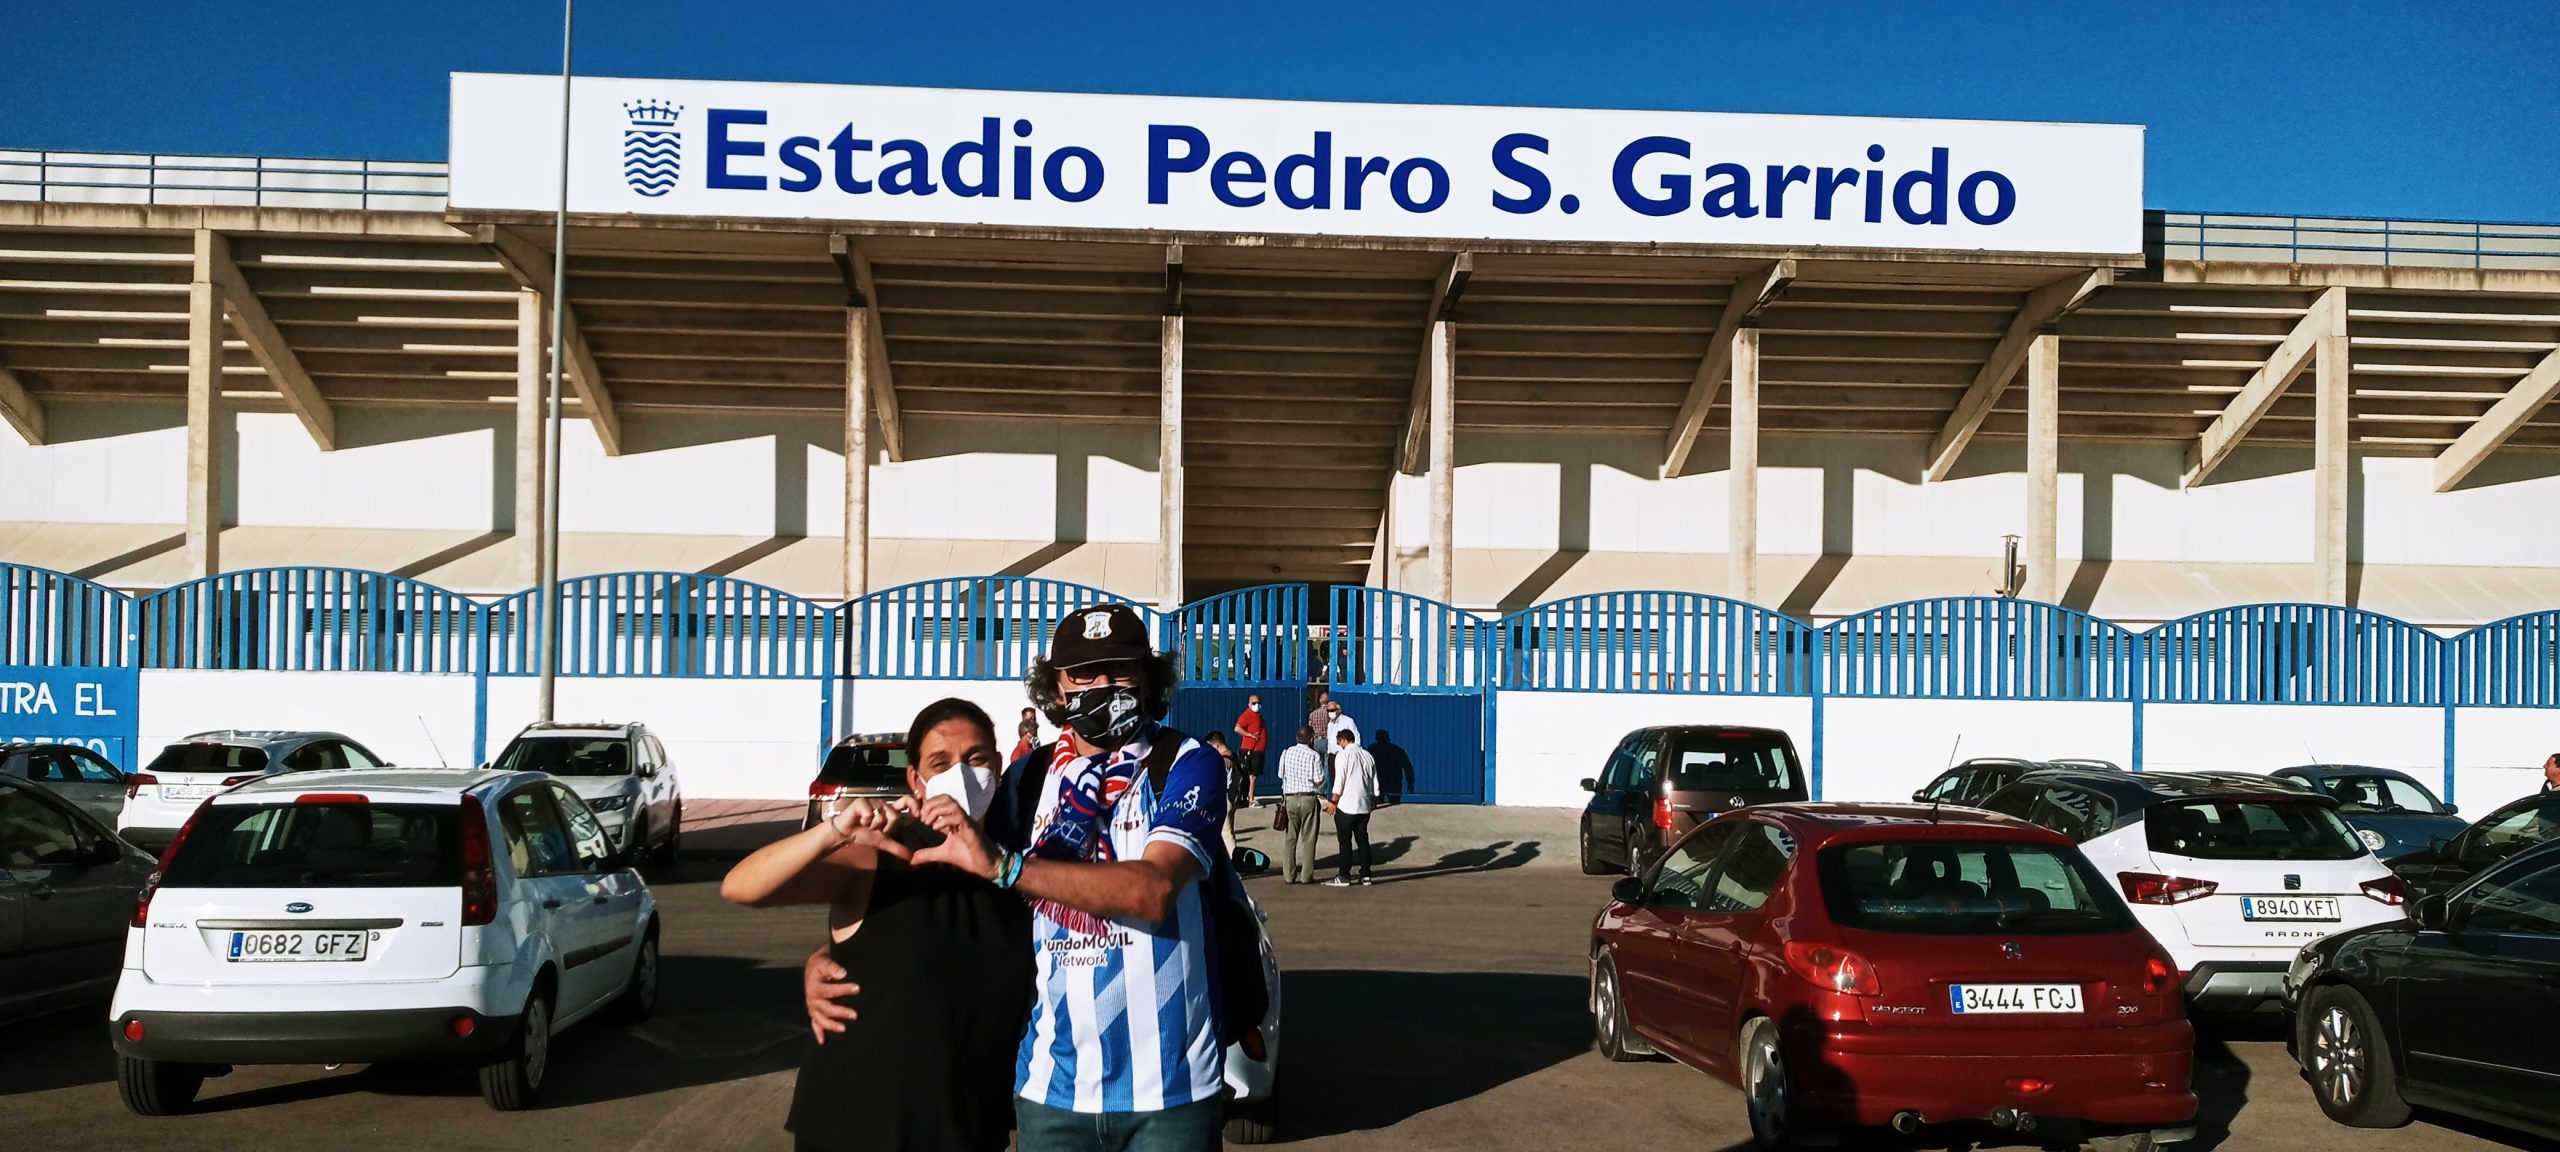 Estadio Pedro S. Garrido